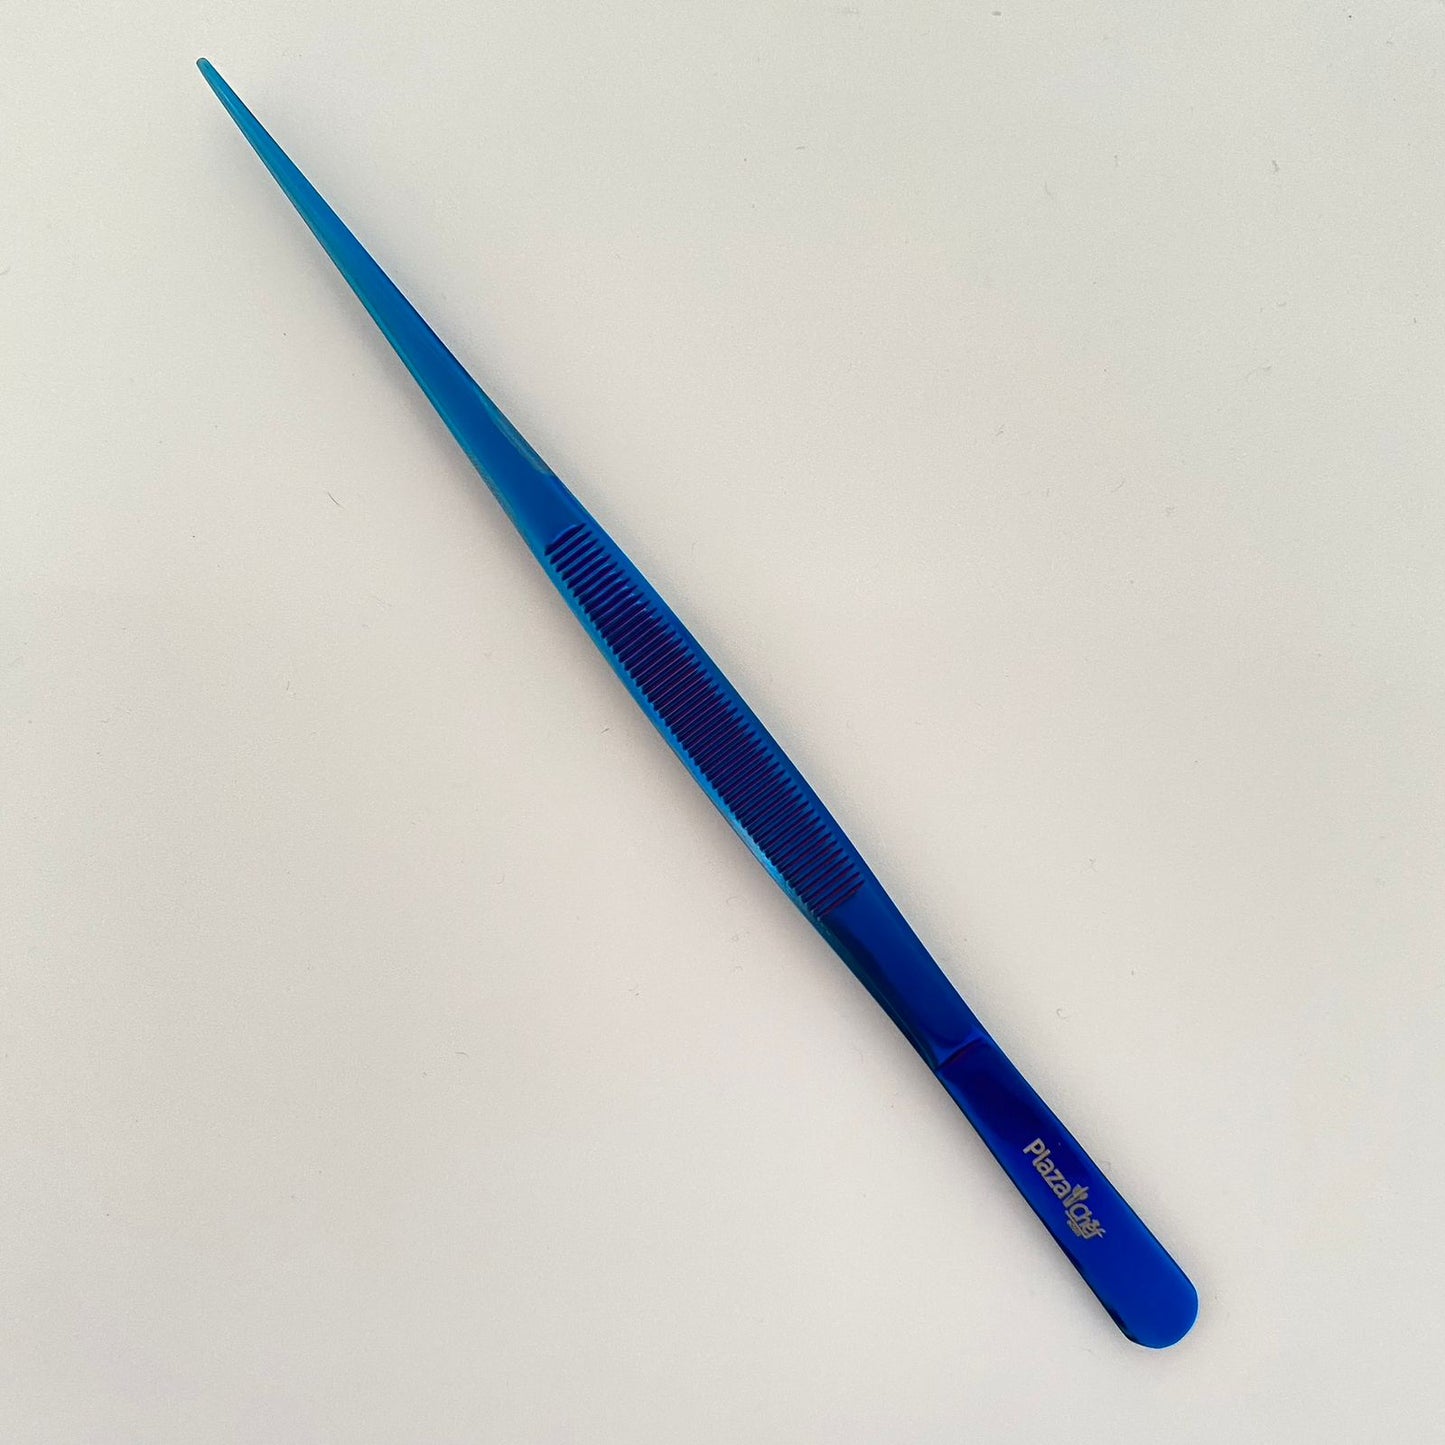 Pinza recta 20cm azul